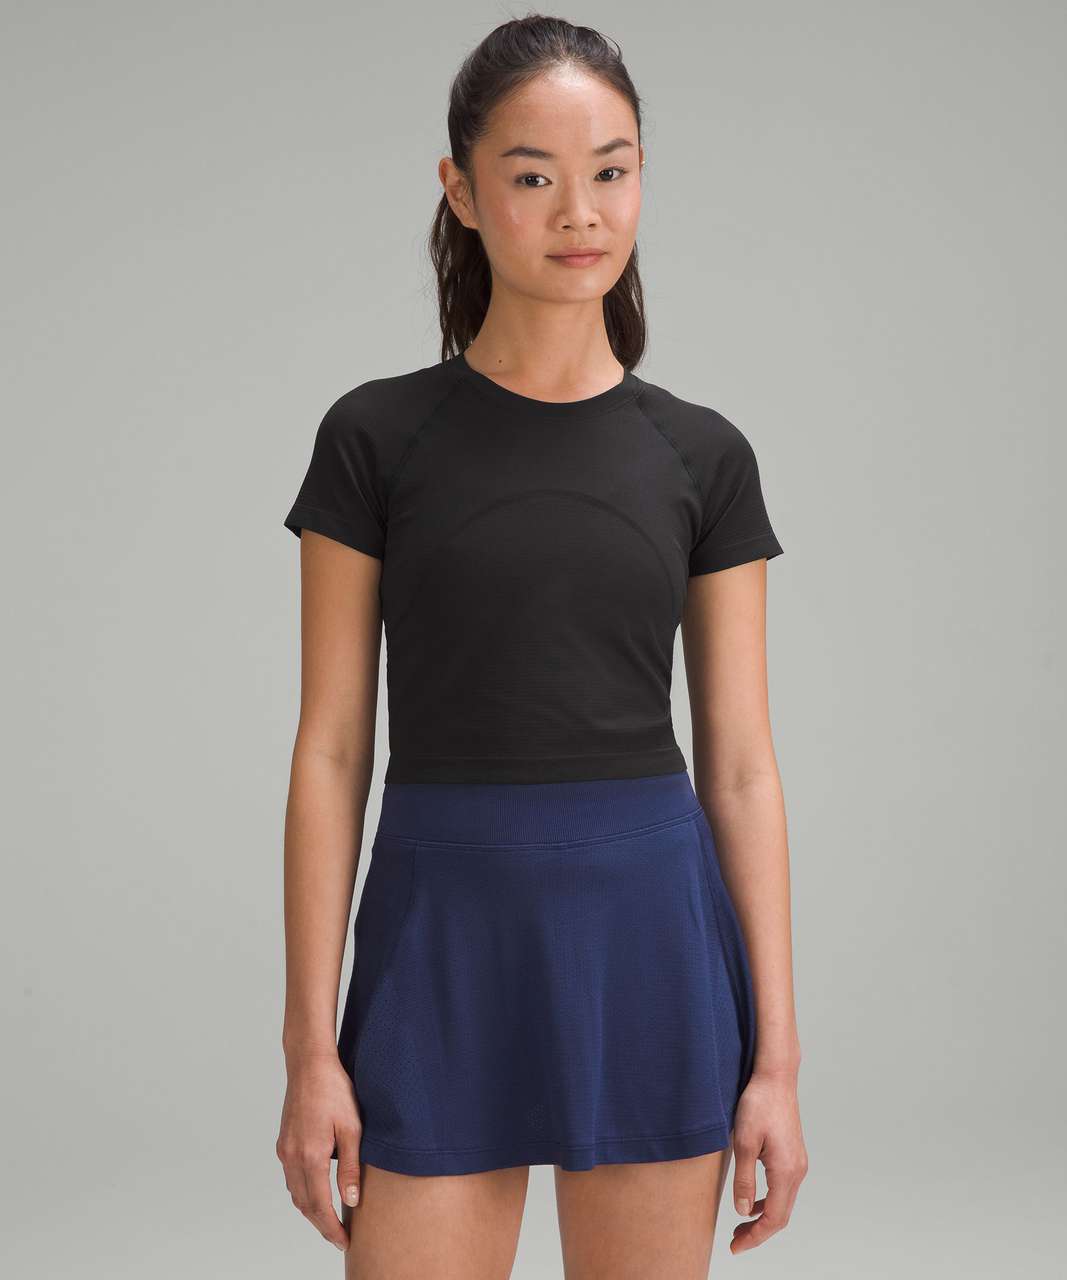 Lululemon Swiftly Tech Cropped Short-Sleeve Shirt 2.0 - Black / Black